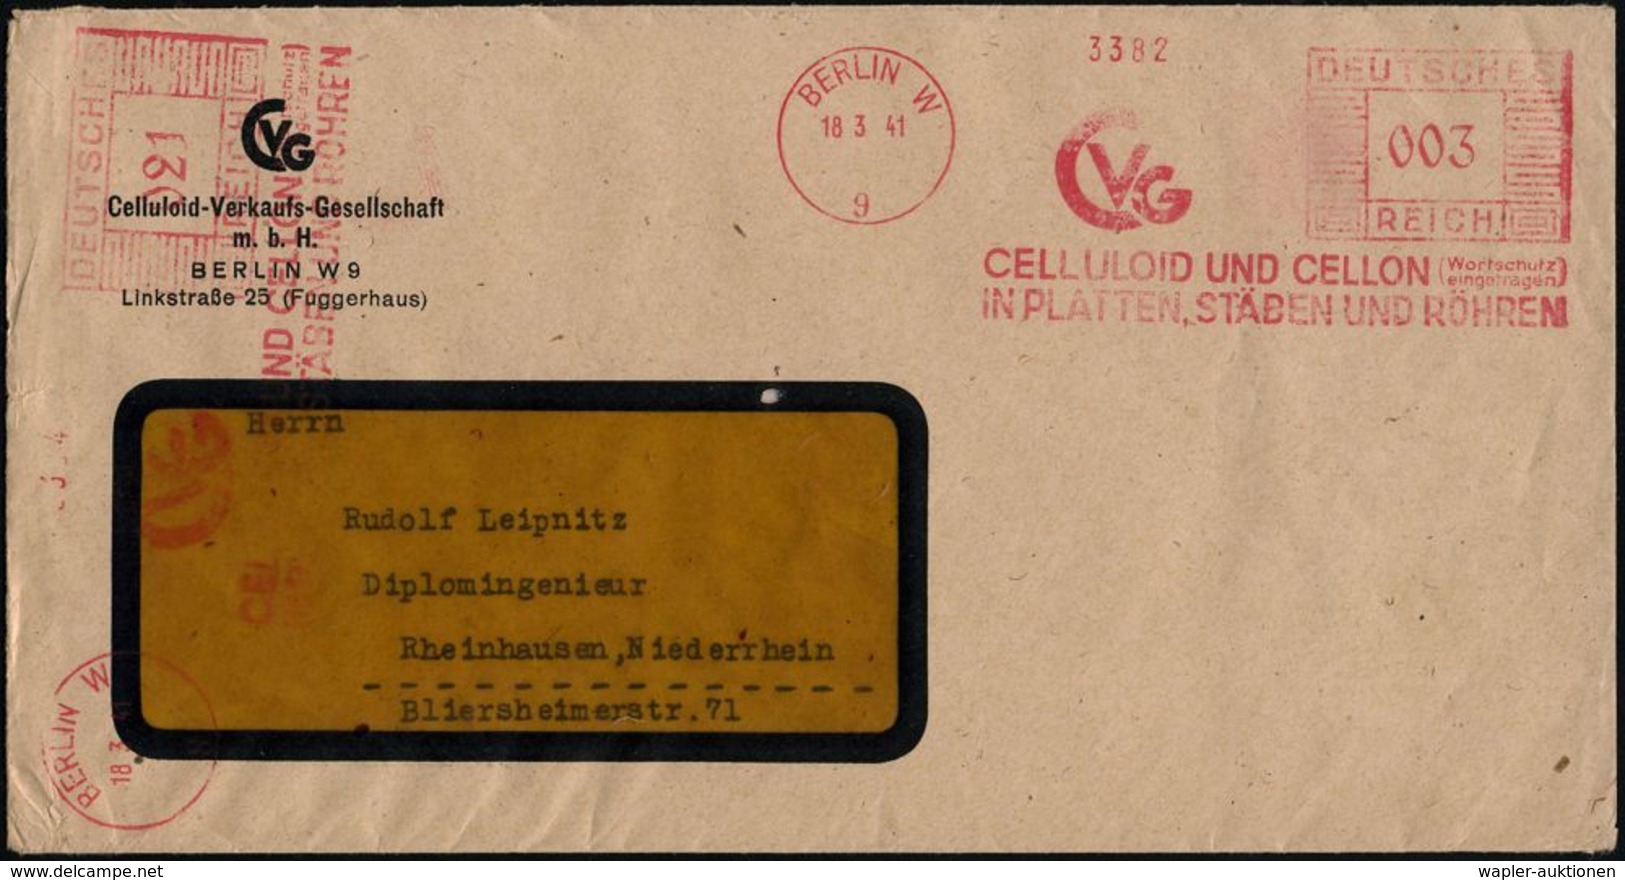 BERLIN W/ 9/ CVG/ CELLULOID UND CELLON (Wortschutz/ Eingetragen)... 1941 (18.3.) AFS 003 Pf. + 021 Pf. = 2 Abdrucke = 24 - Chimie